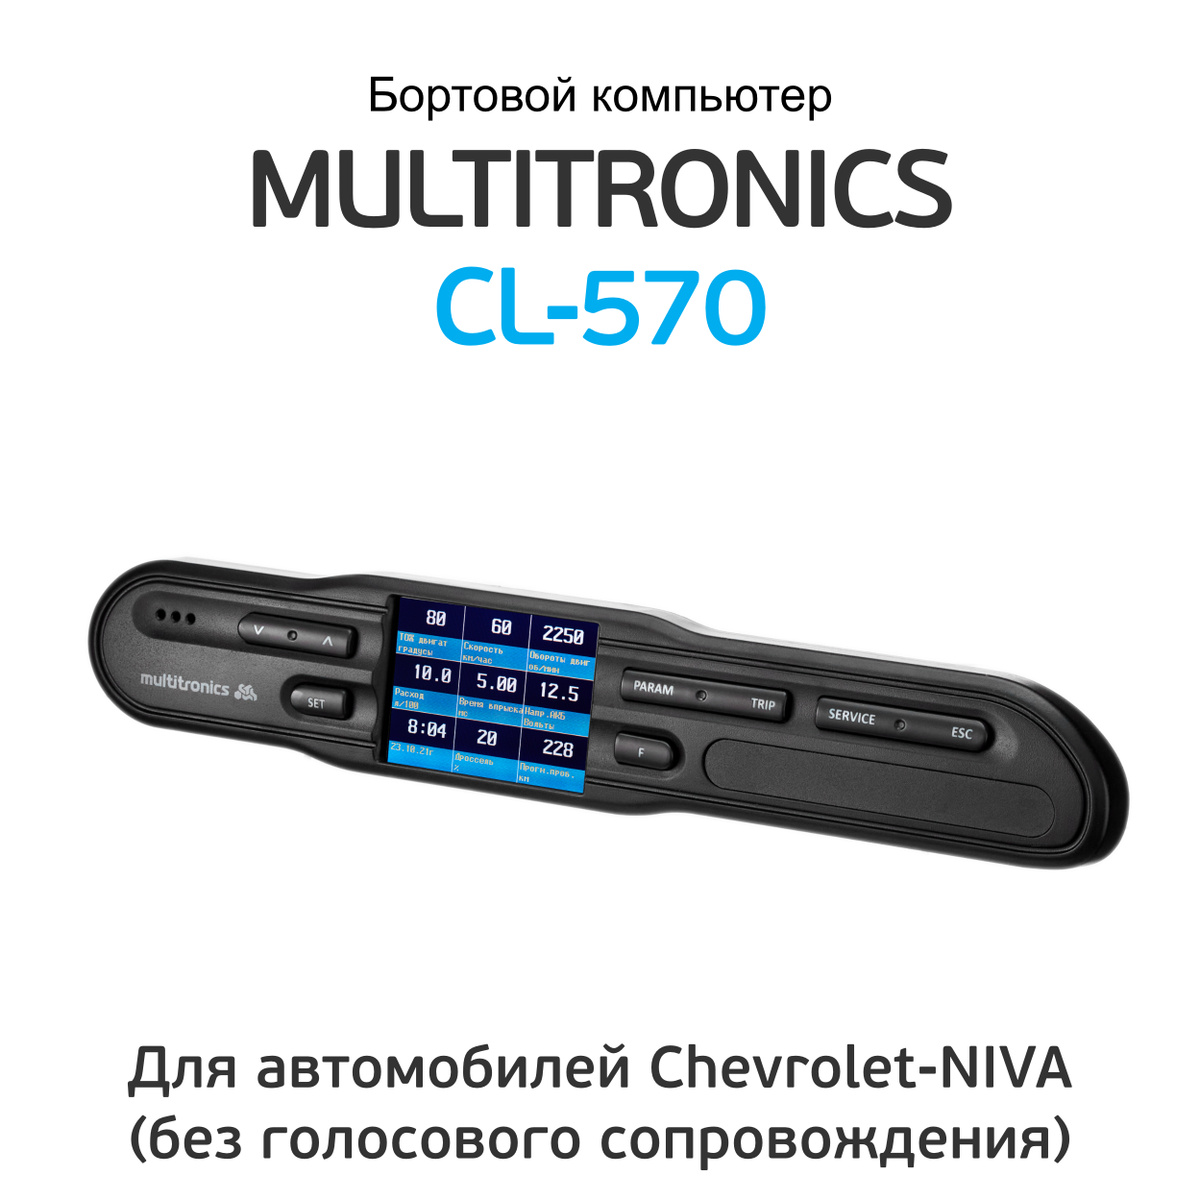 маршрутный компьютер multitronics cl-570 chevrolet niva инструкция